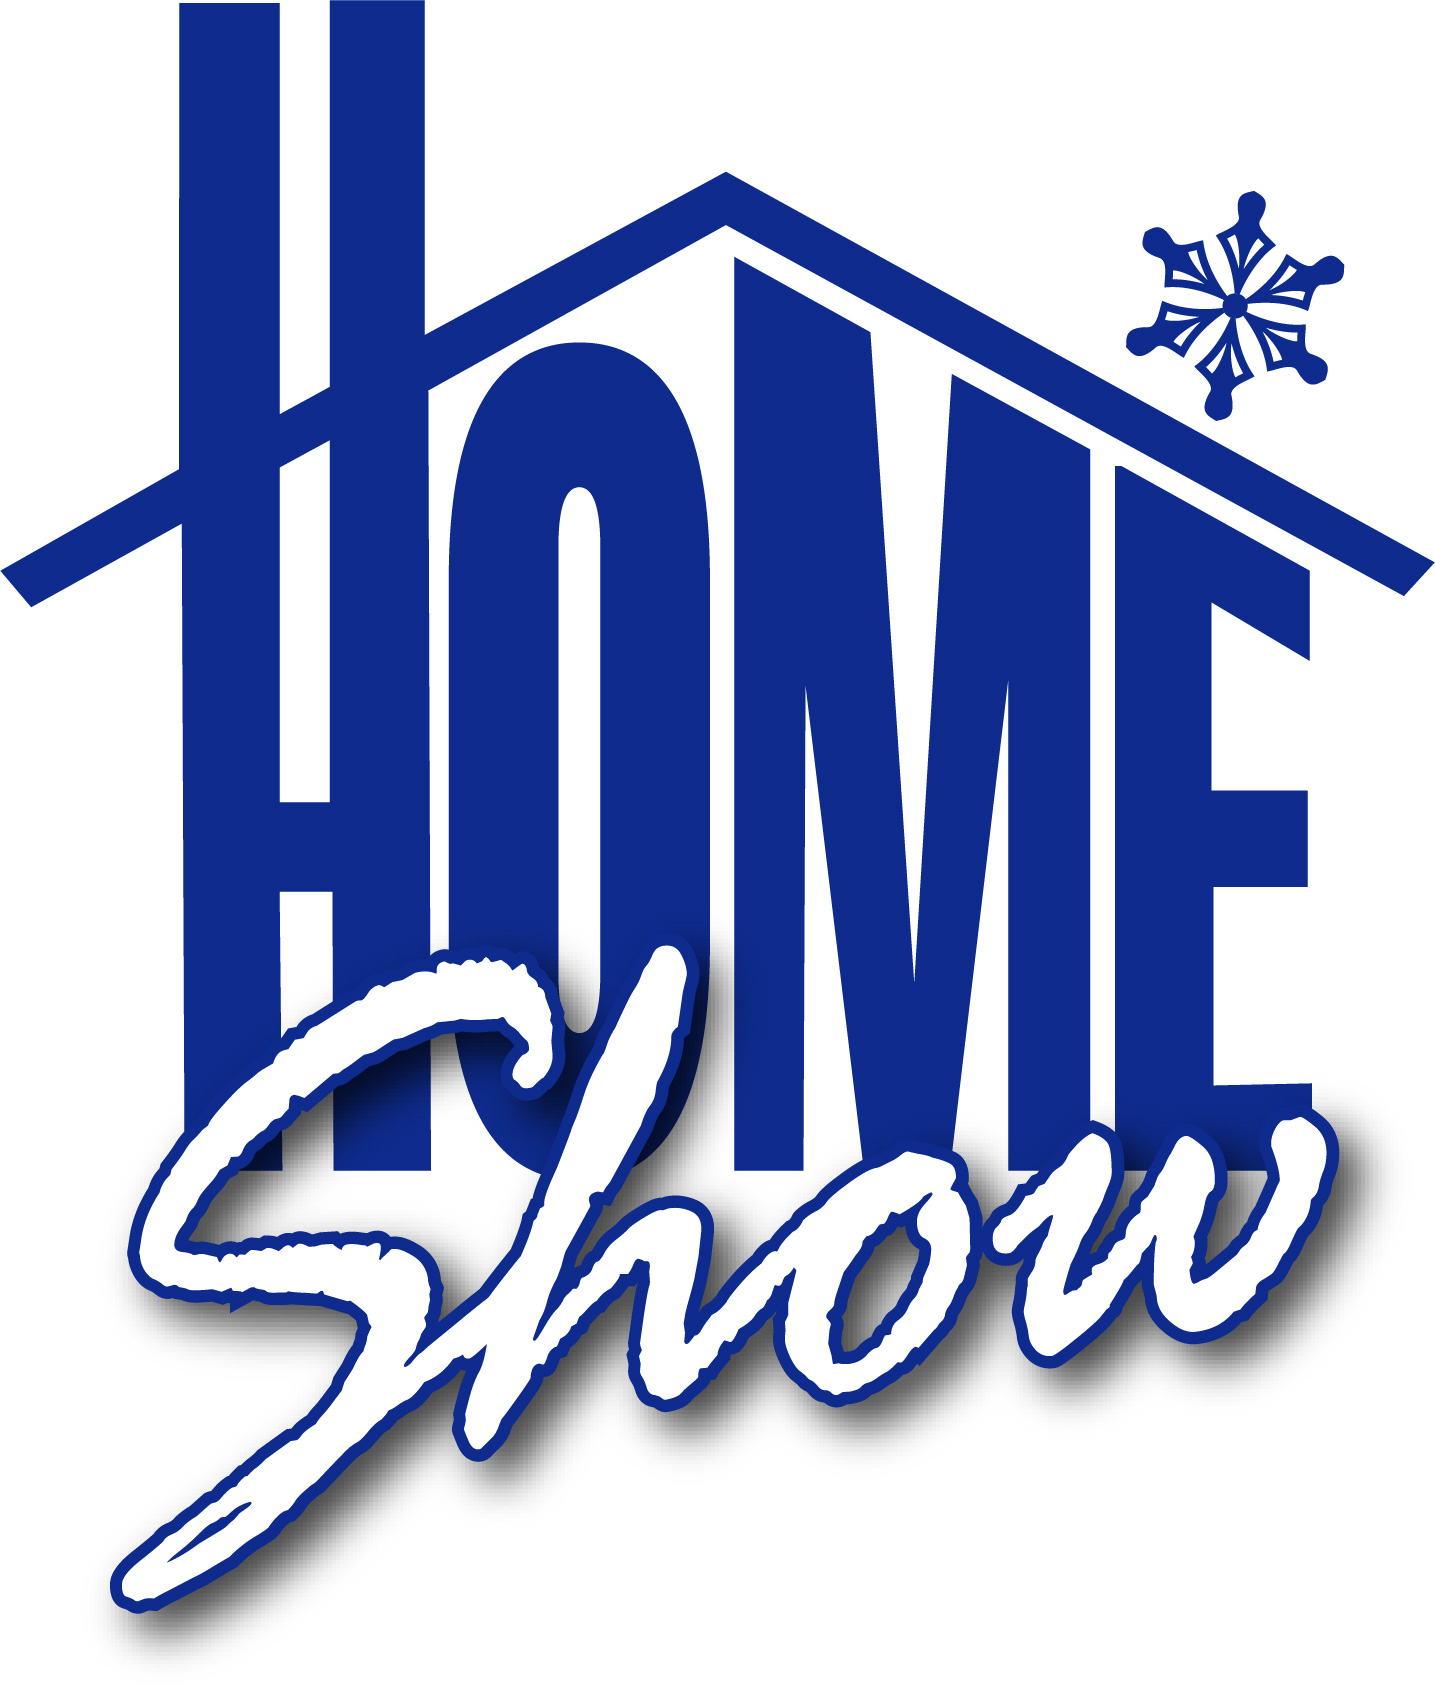 Home Show logo